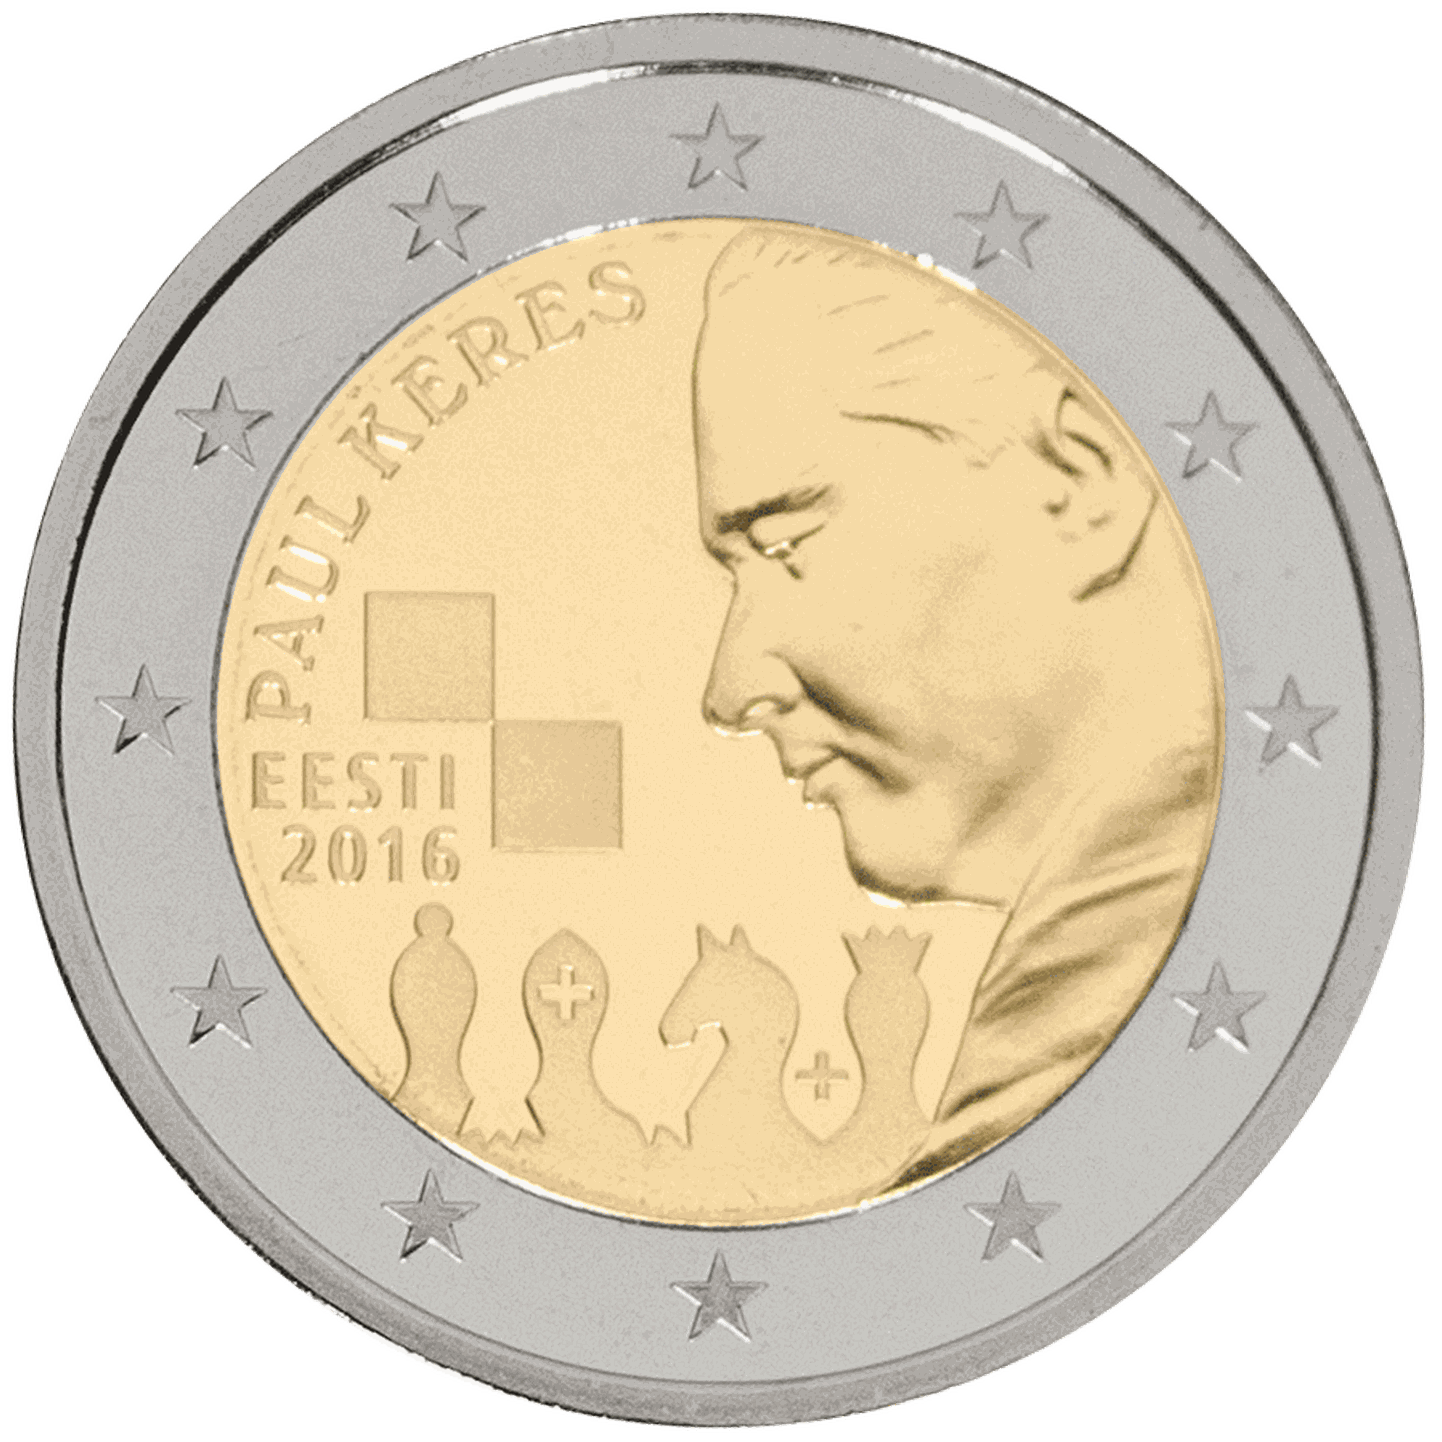 Paul Keresele pühendatud 2-eurone käibemünt.